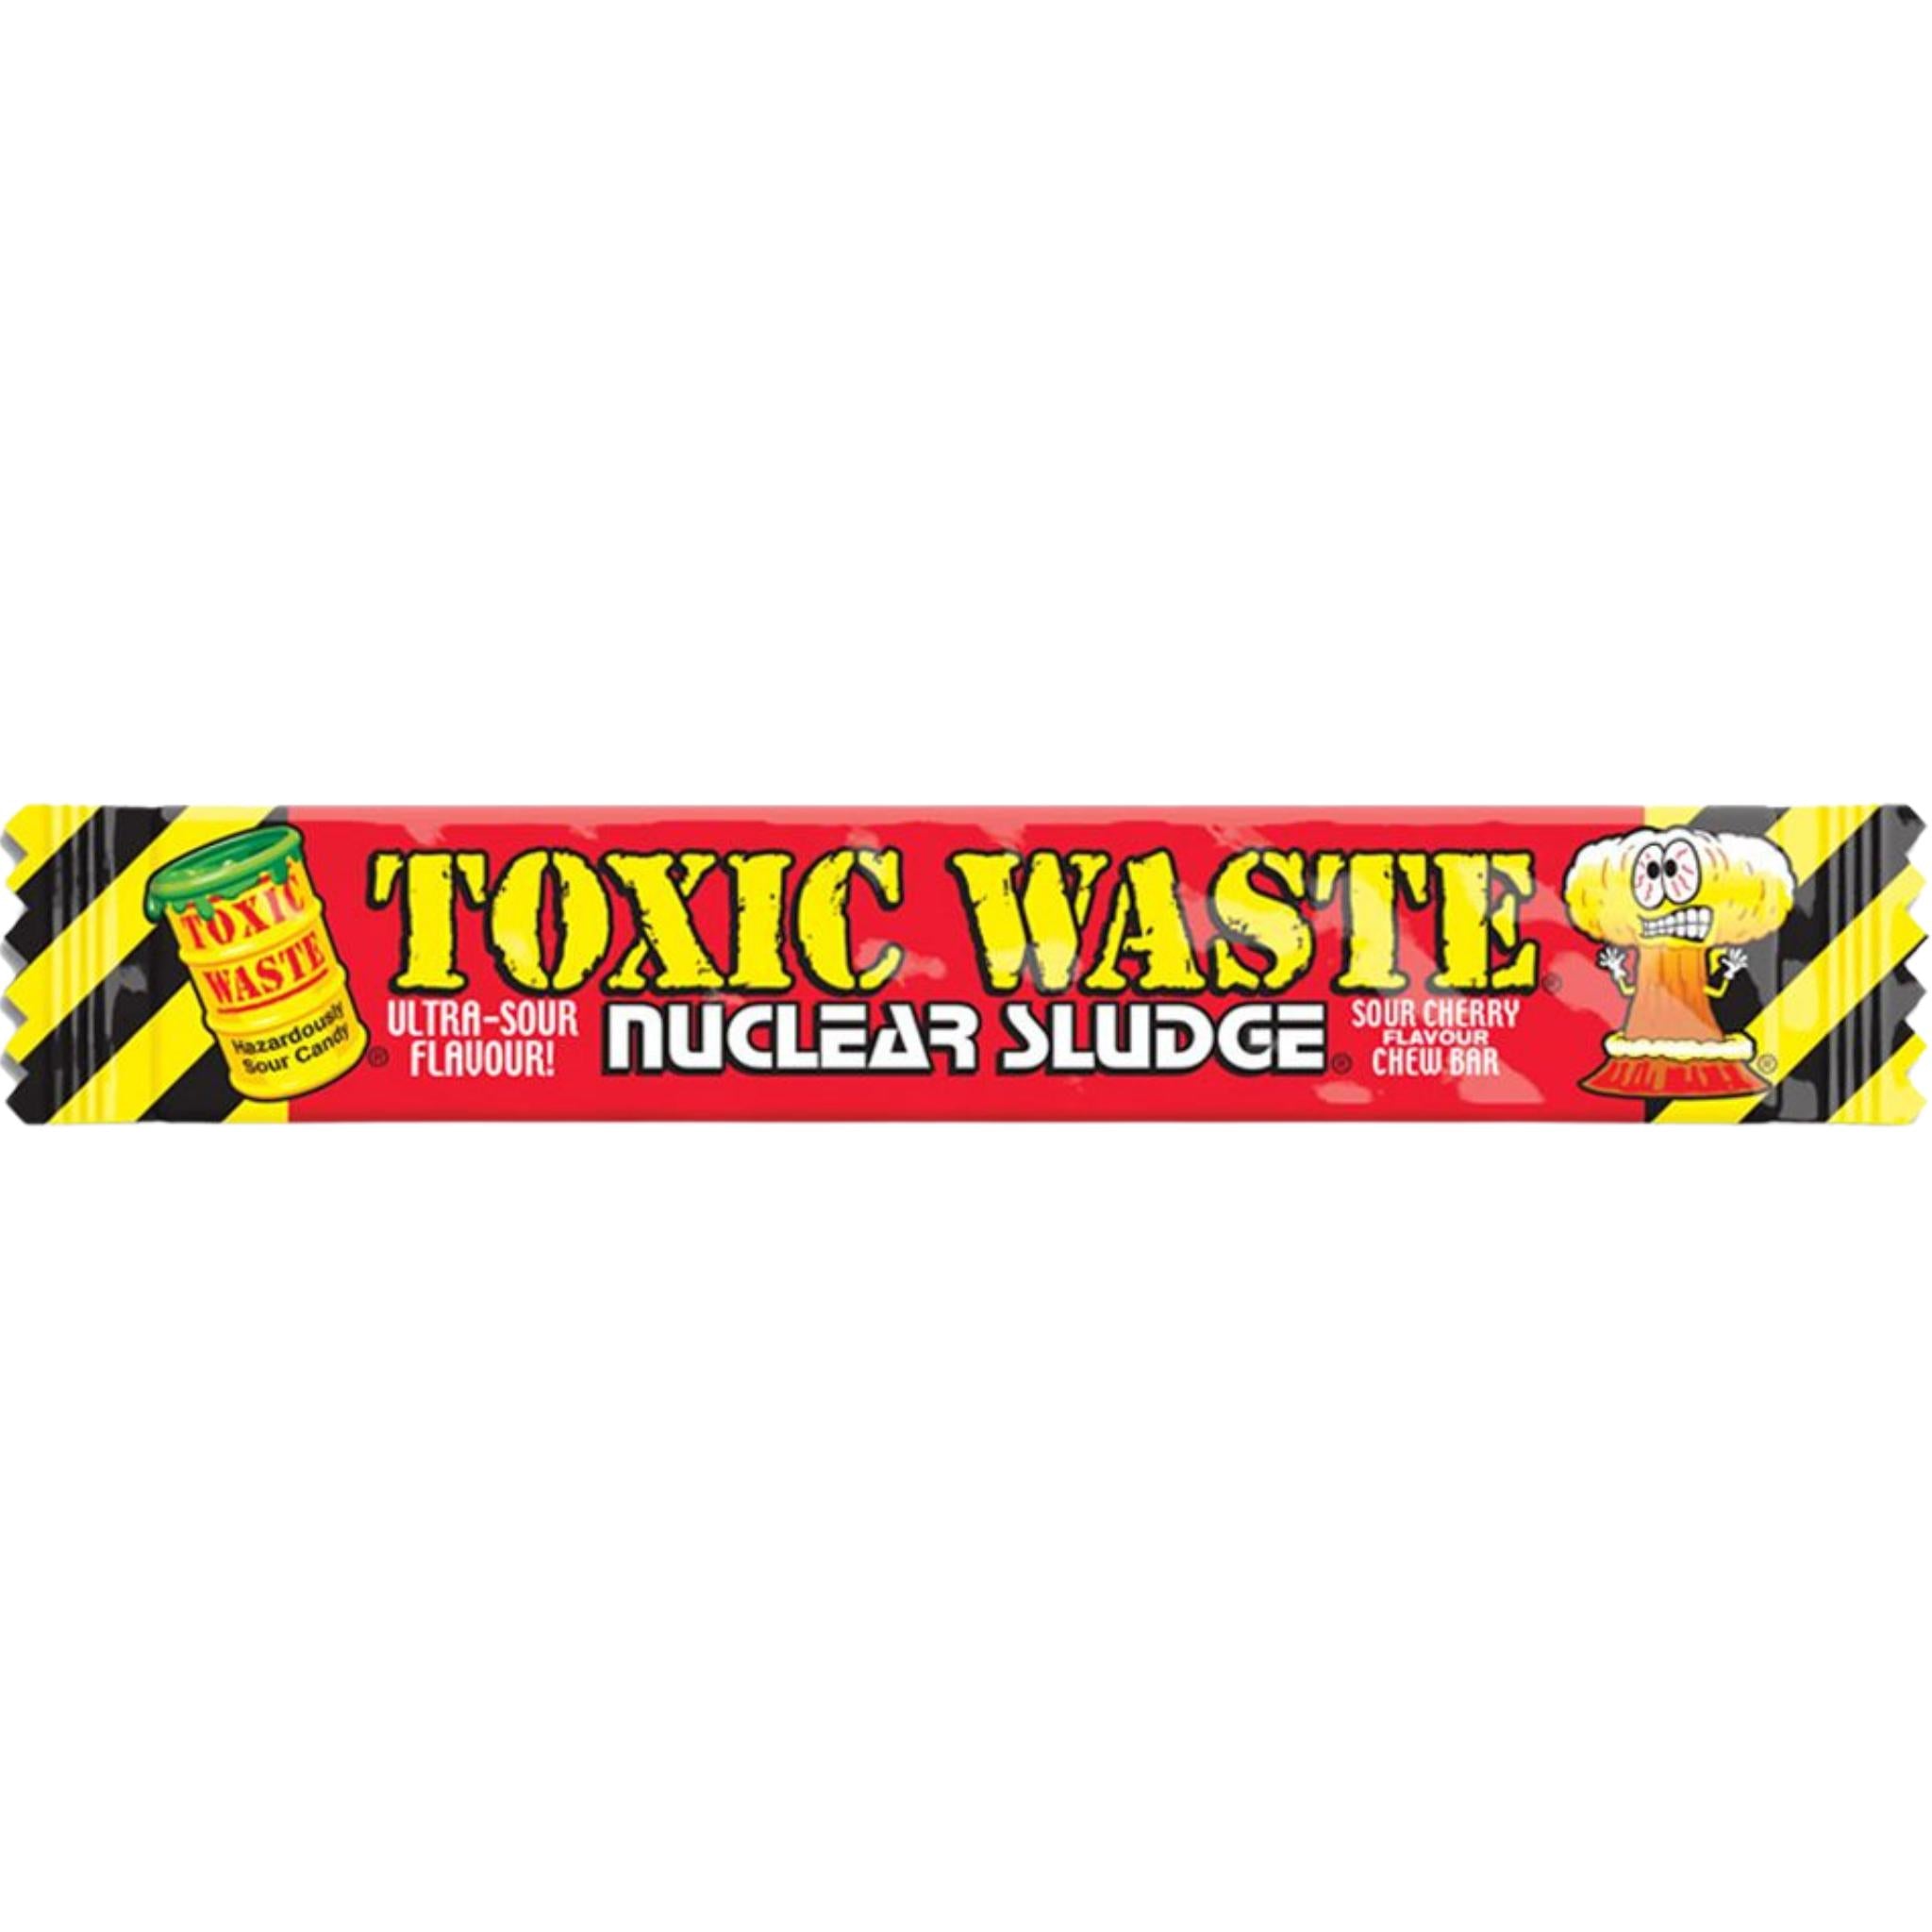 Toxic Waste Nuclear Sludge Cherry Chew Bar - 20g